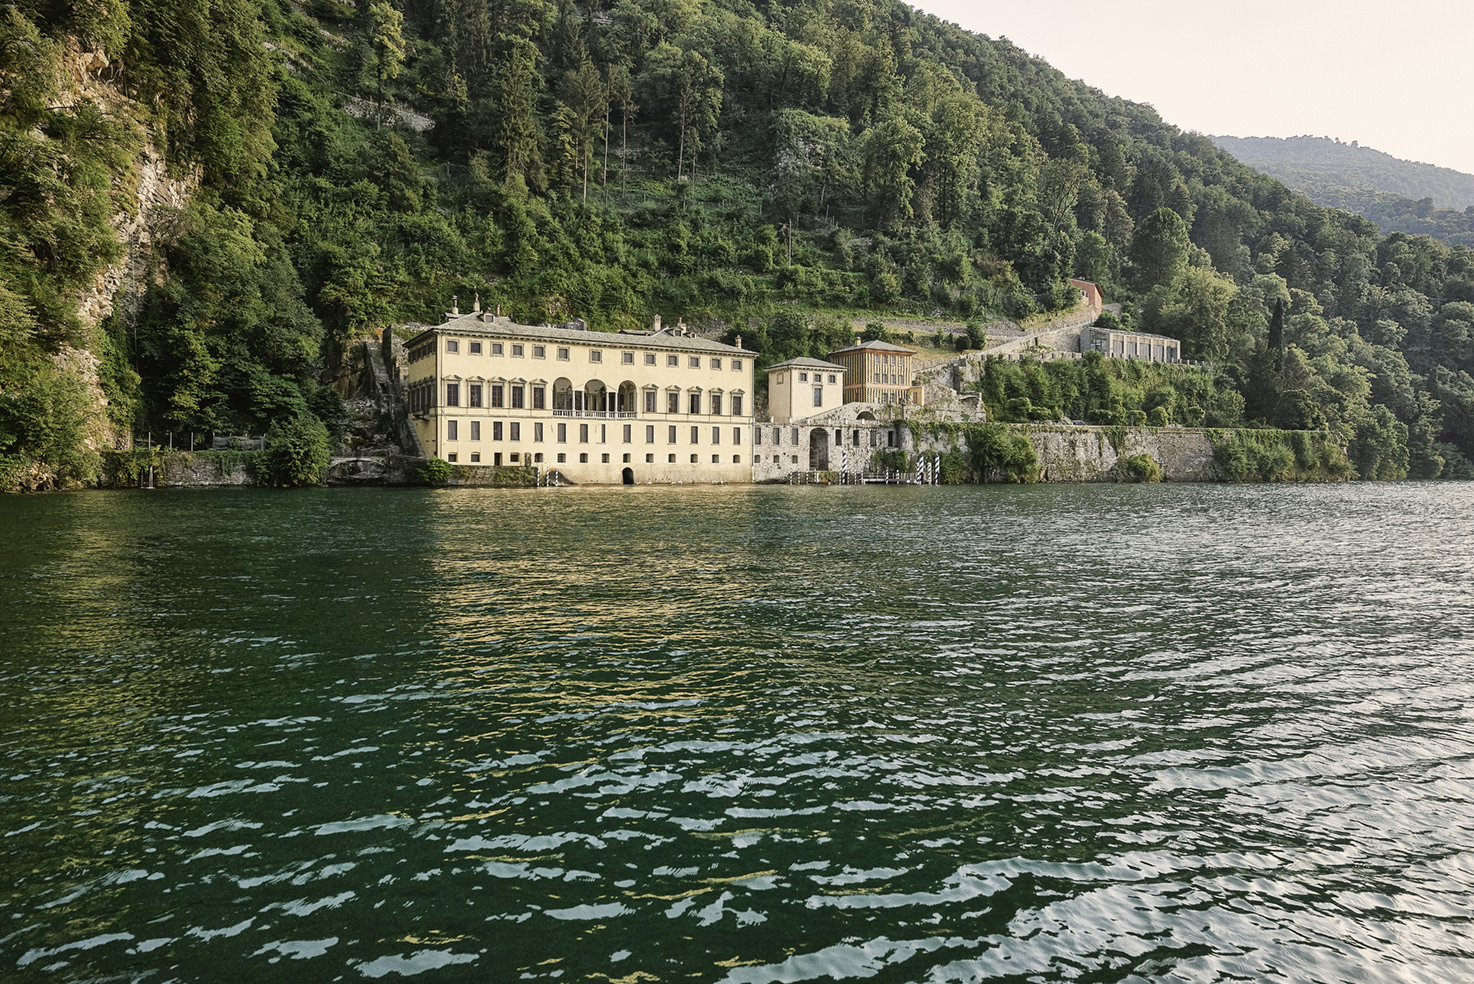 Villa Pliniana facing Lake Como